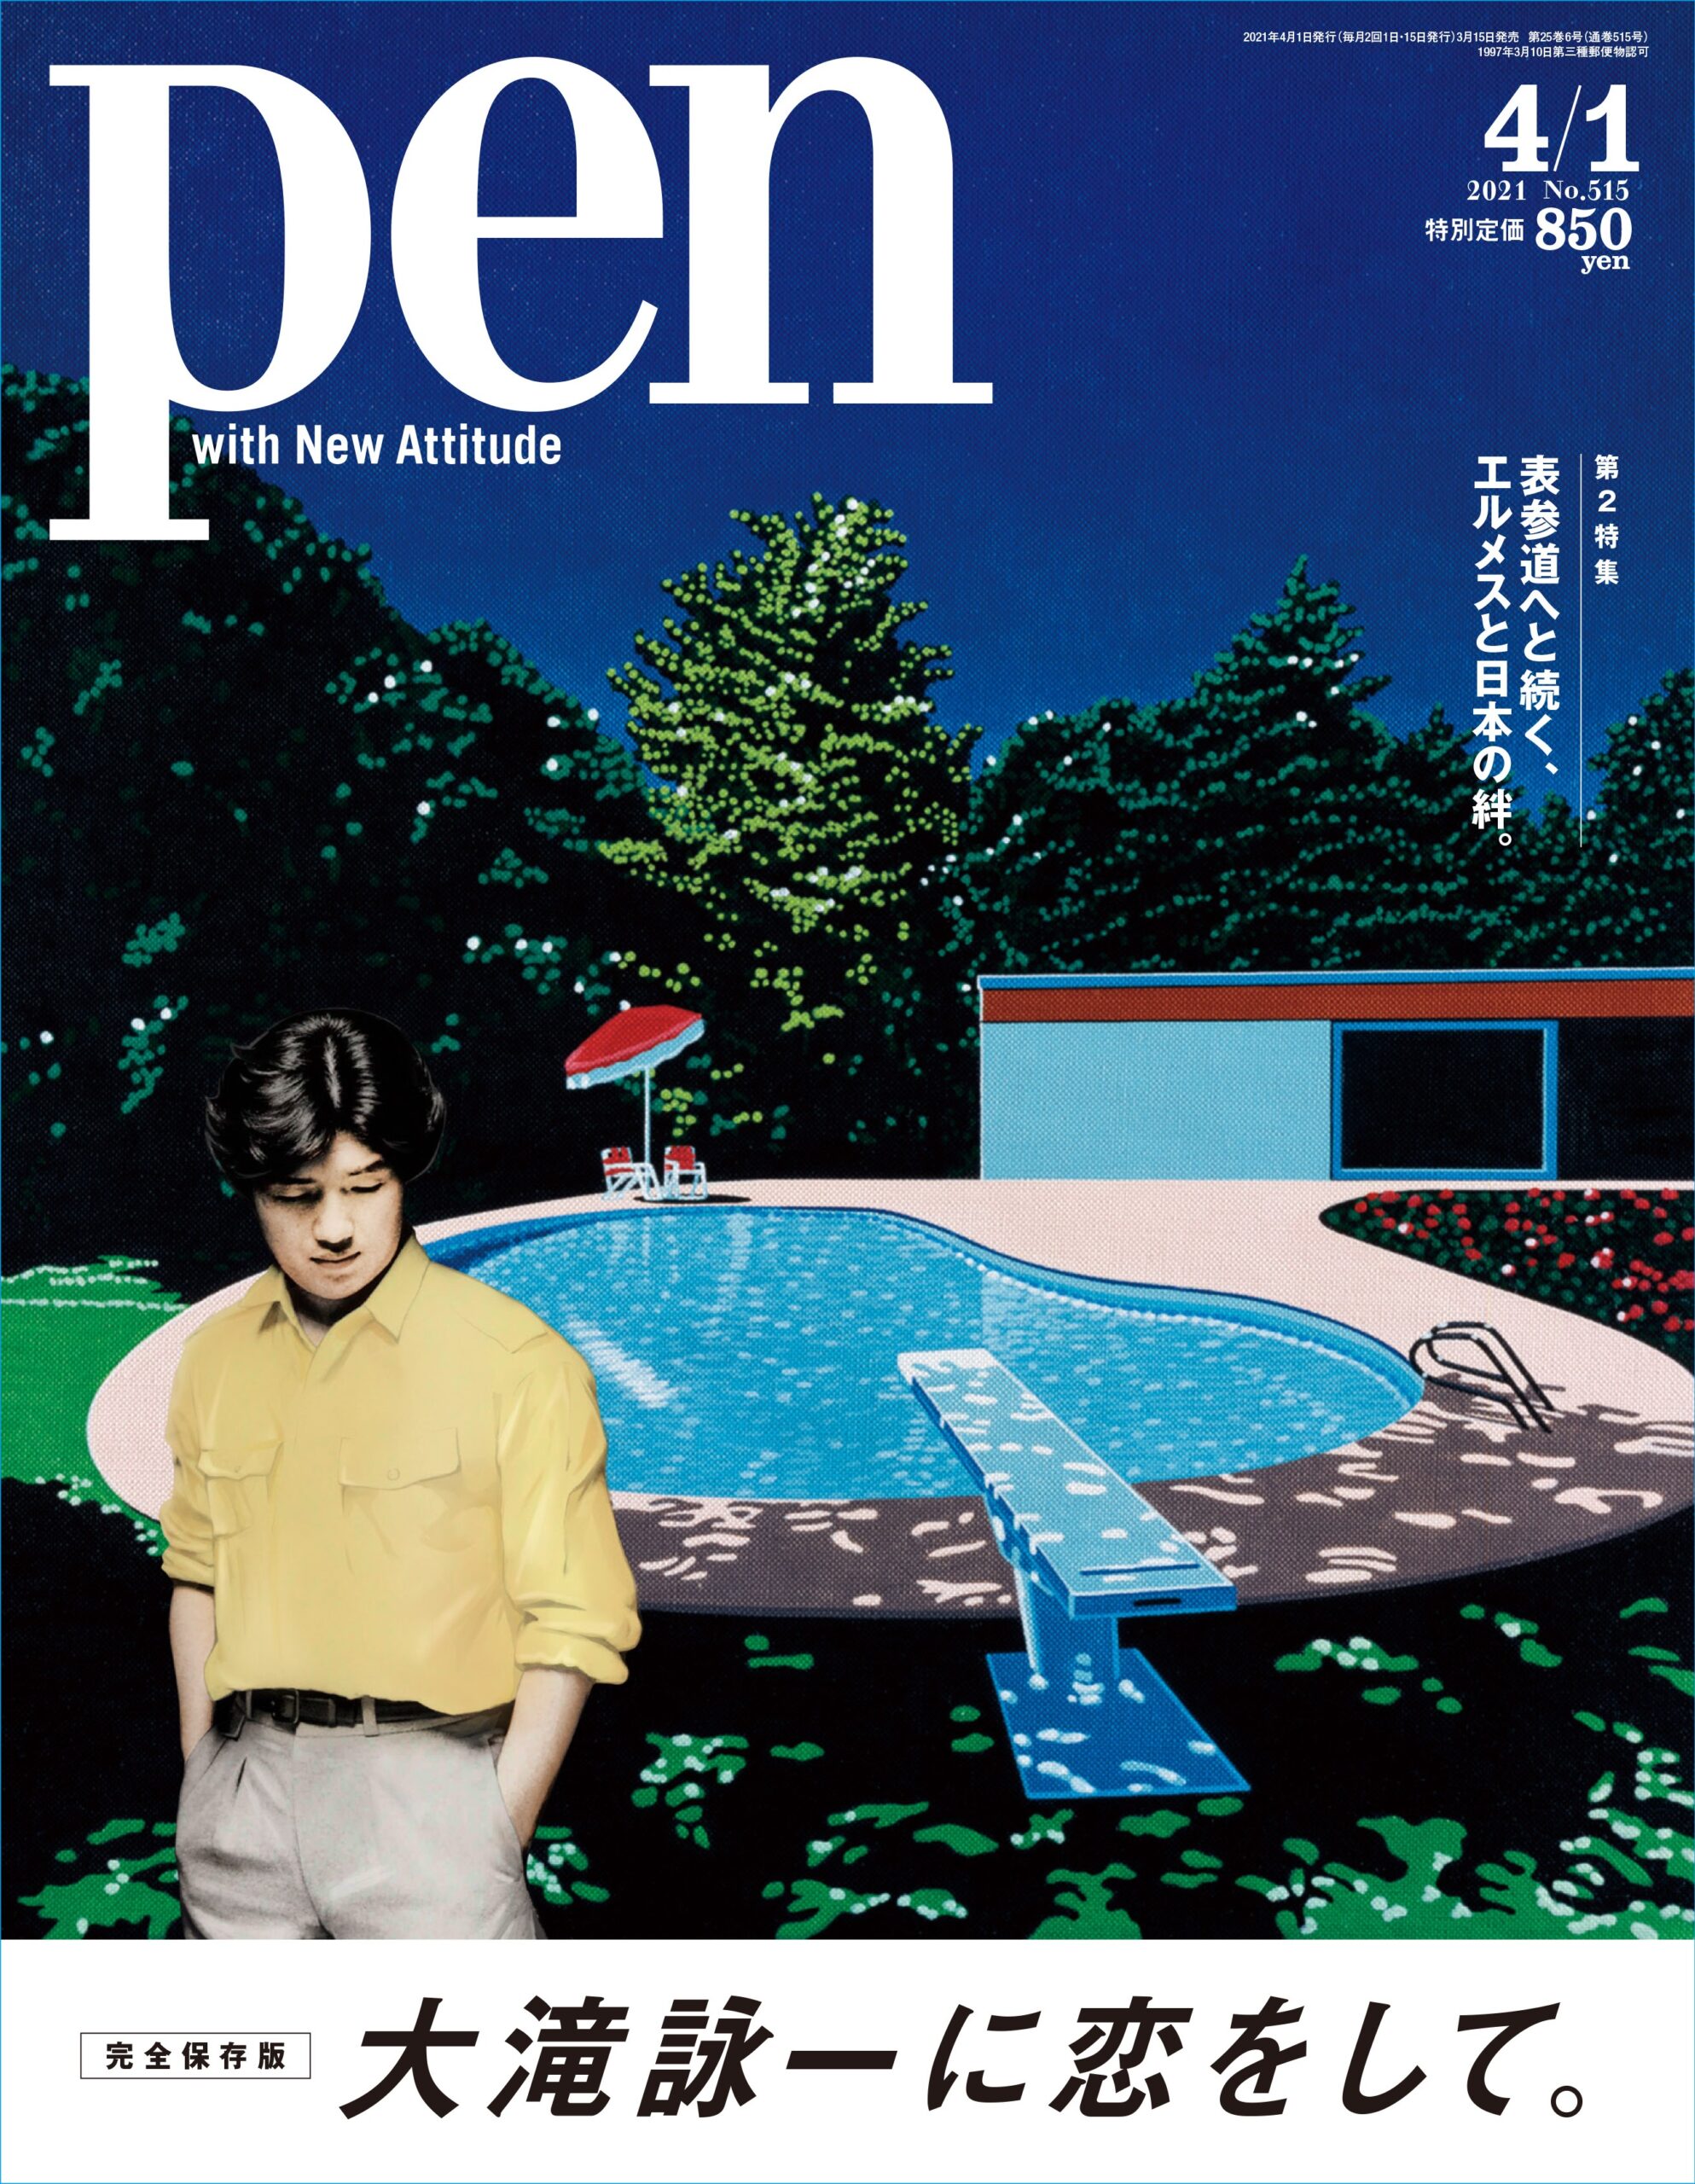 大滝詠一、名作アルバム『ロンバケ』発売40周年記念、雑誌『PEN』大滝